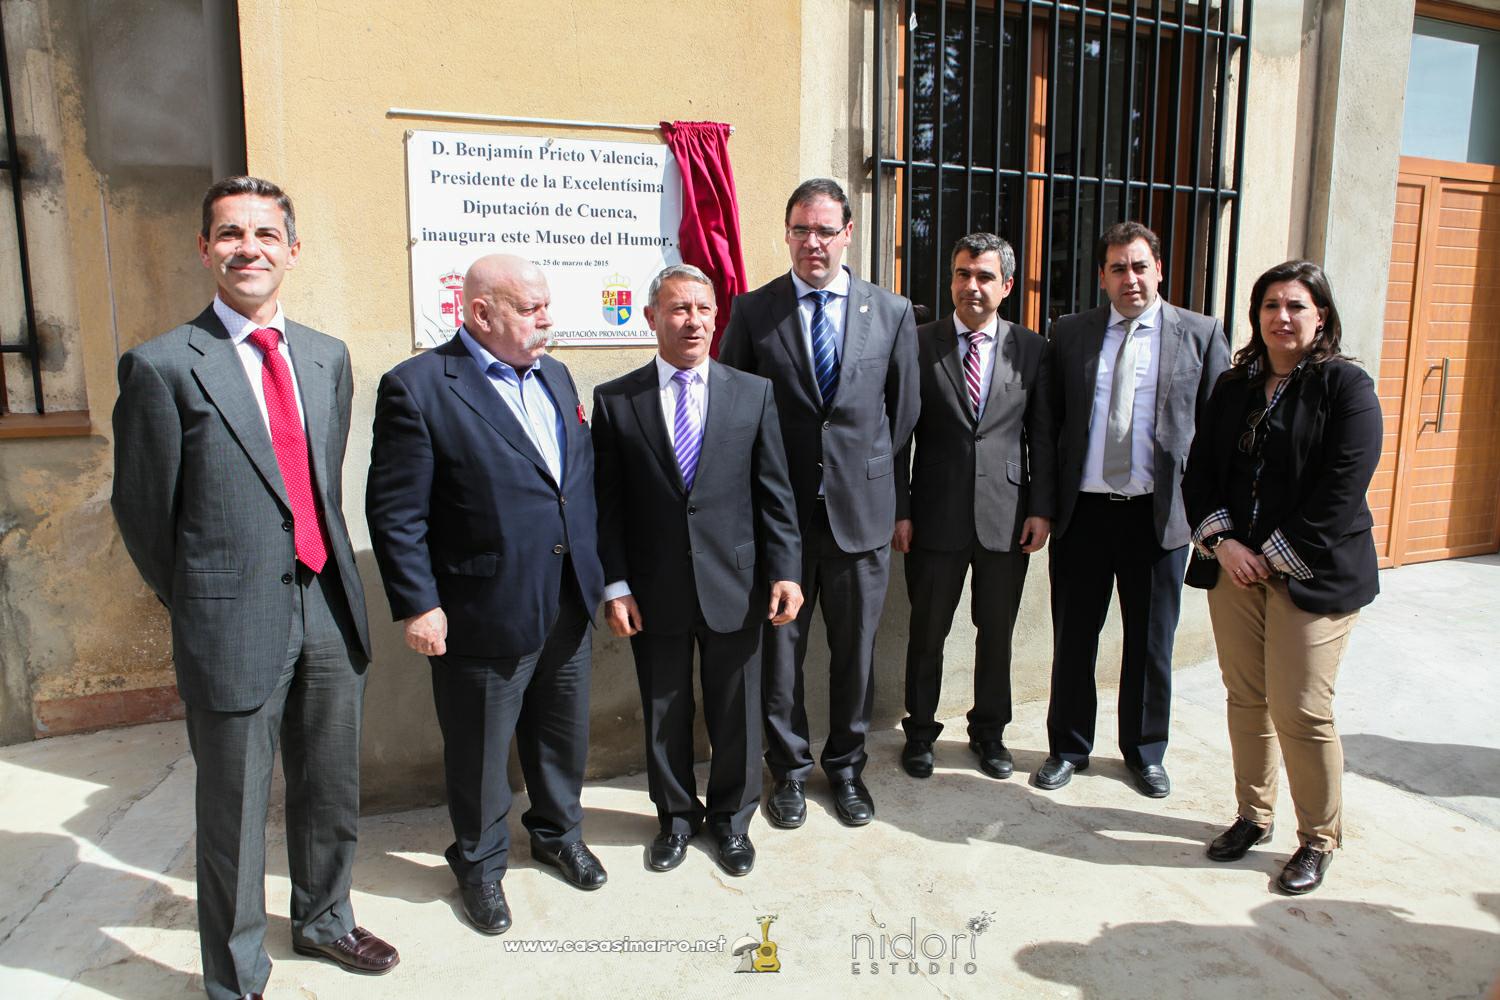 El alcalde de Casasimarro, Juan Sahuquillo (3i) inaugura un placa del Museo del Humor en la localidad.